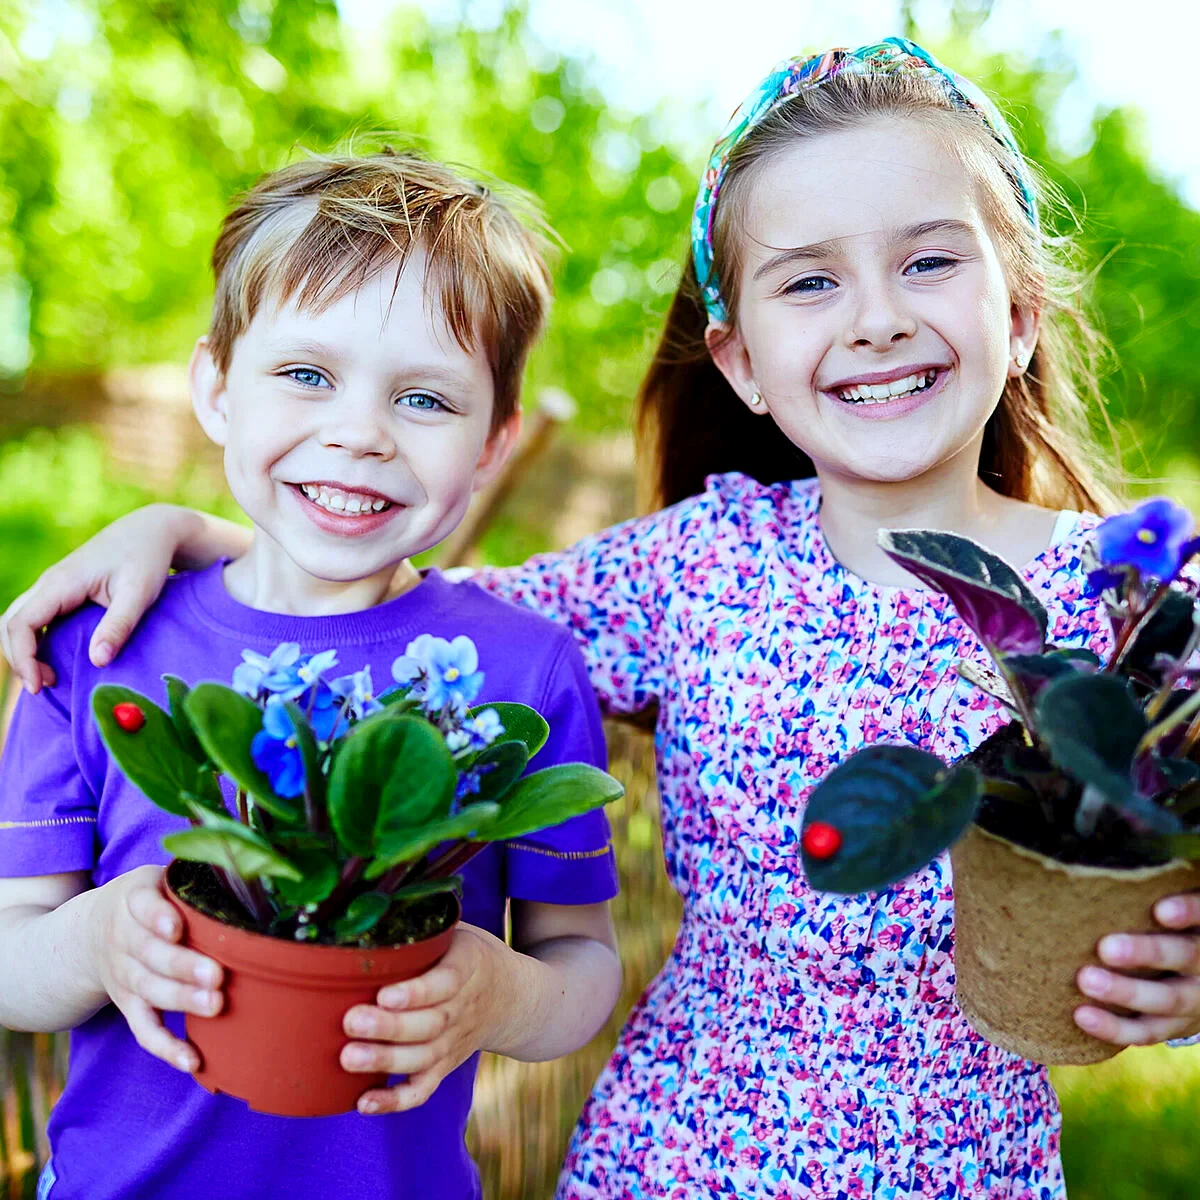 quel site si on veut jardiner bio deux enfants avec pots fleurs